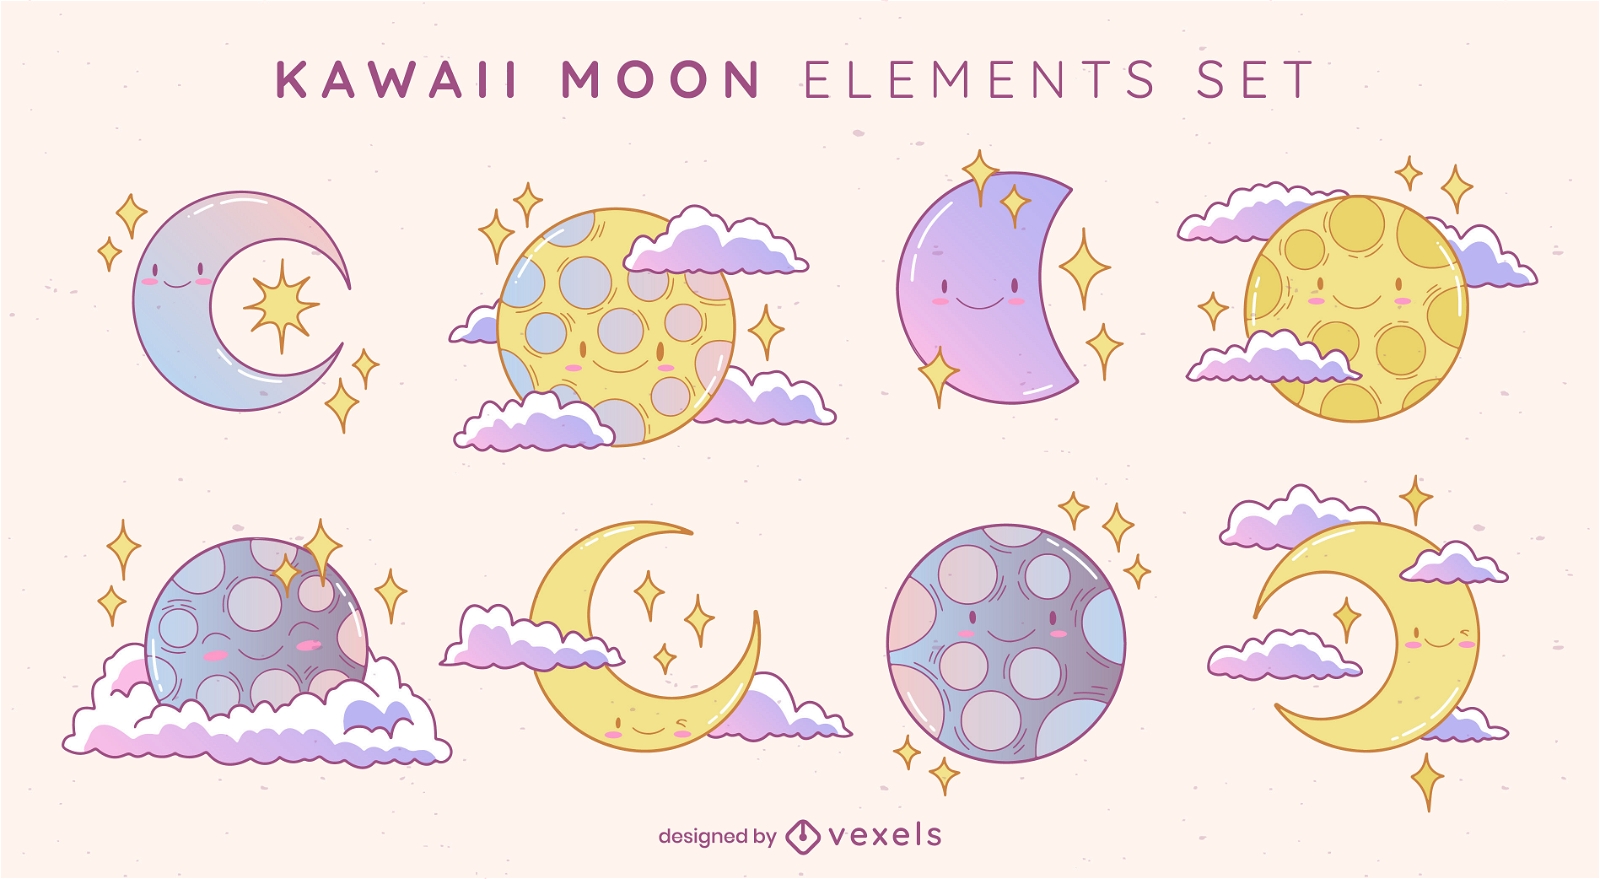 Kawaii moon elements set